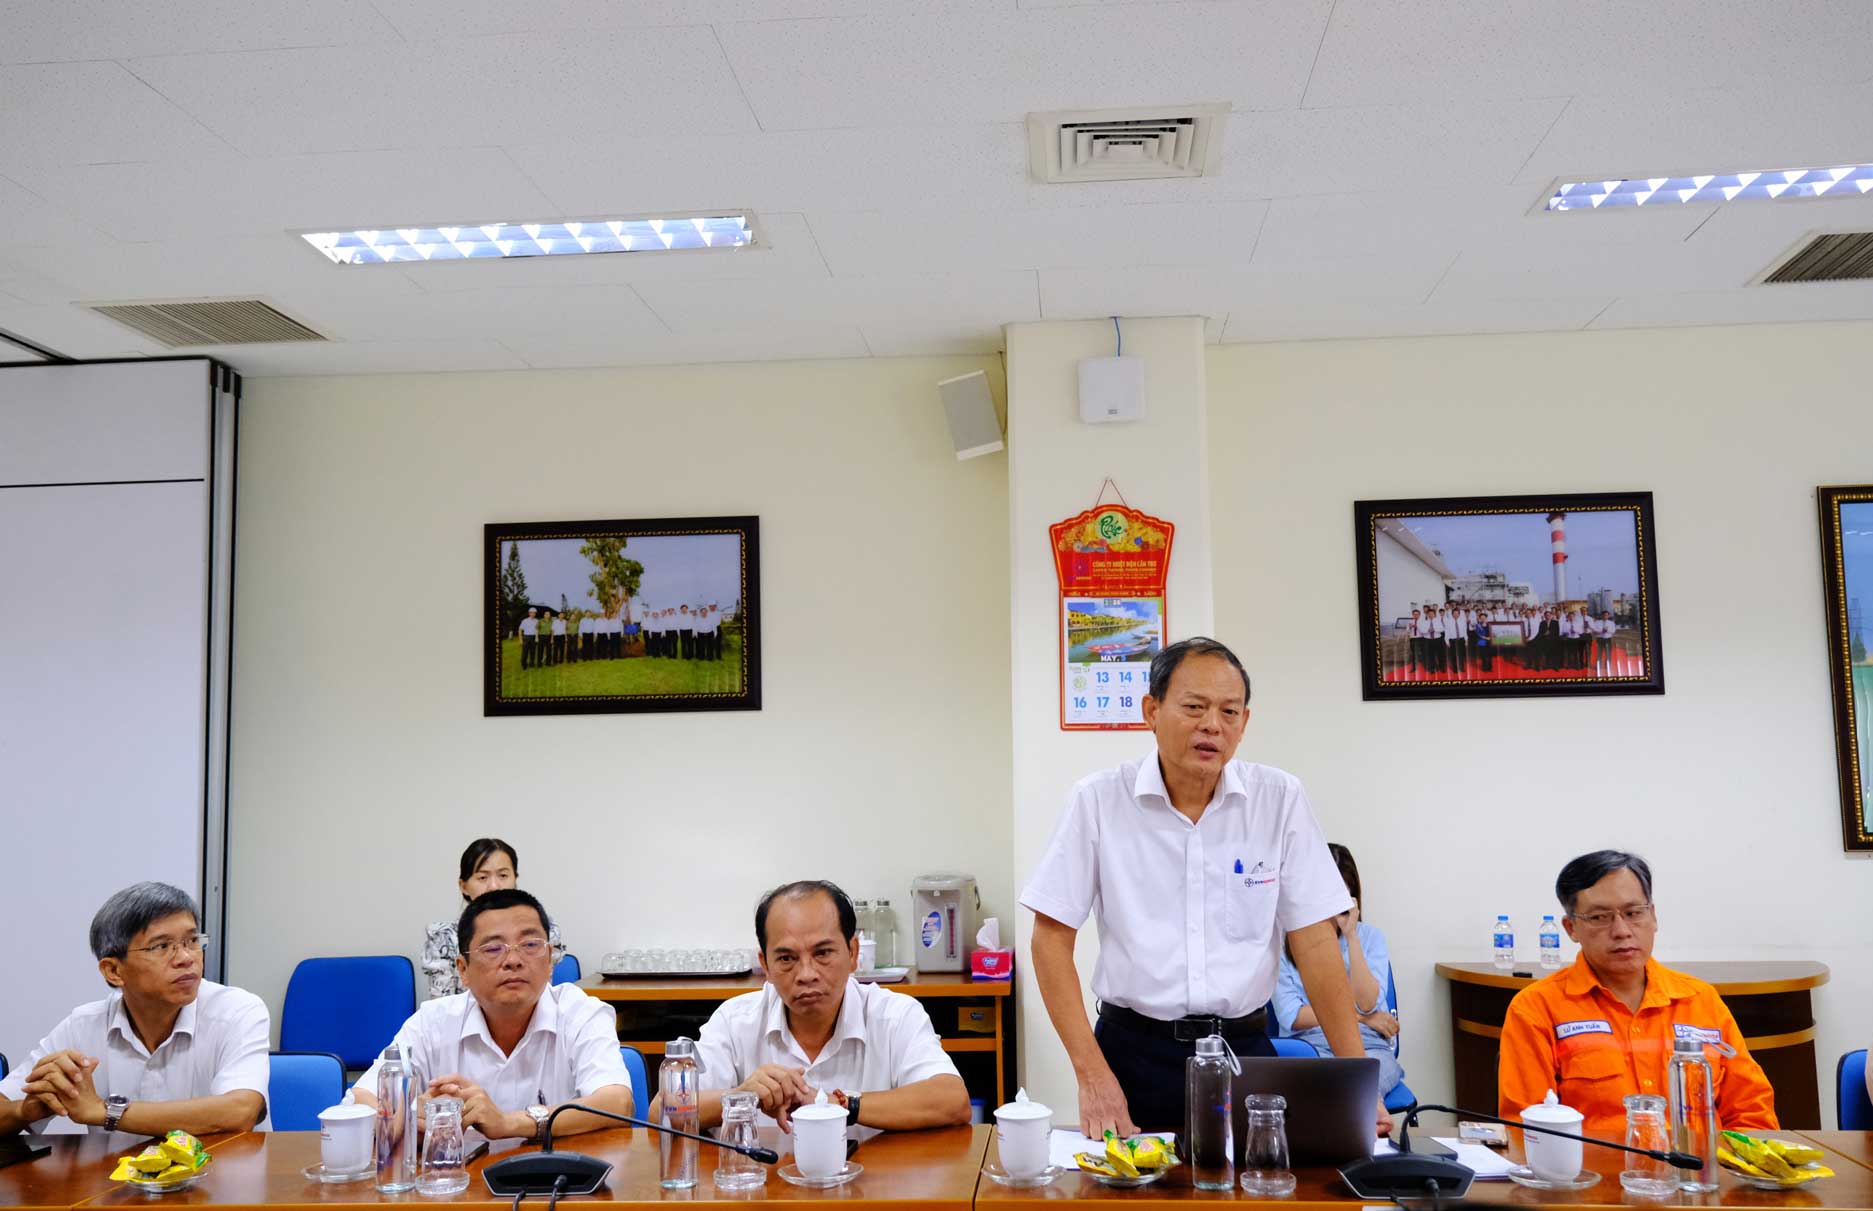 Ông Nguyễn Hữu Lộc – Phó Giám đốc, Chủ tịch công đoàn Công ty Nhiệt điện Cần Thơ – báo cáo tình hình hoạt động công đoàn tại công ty. Ảnh: Mỹ Ly